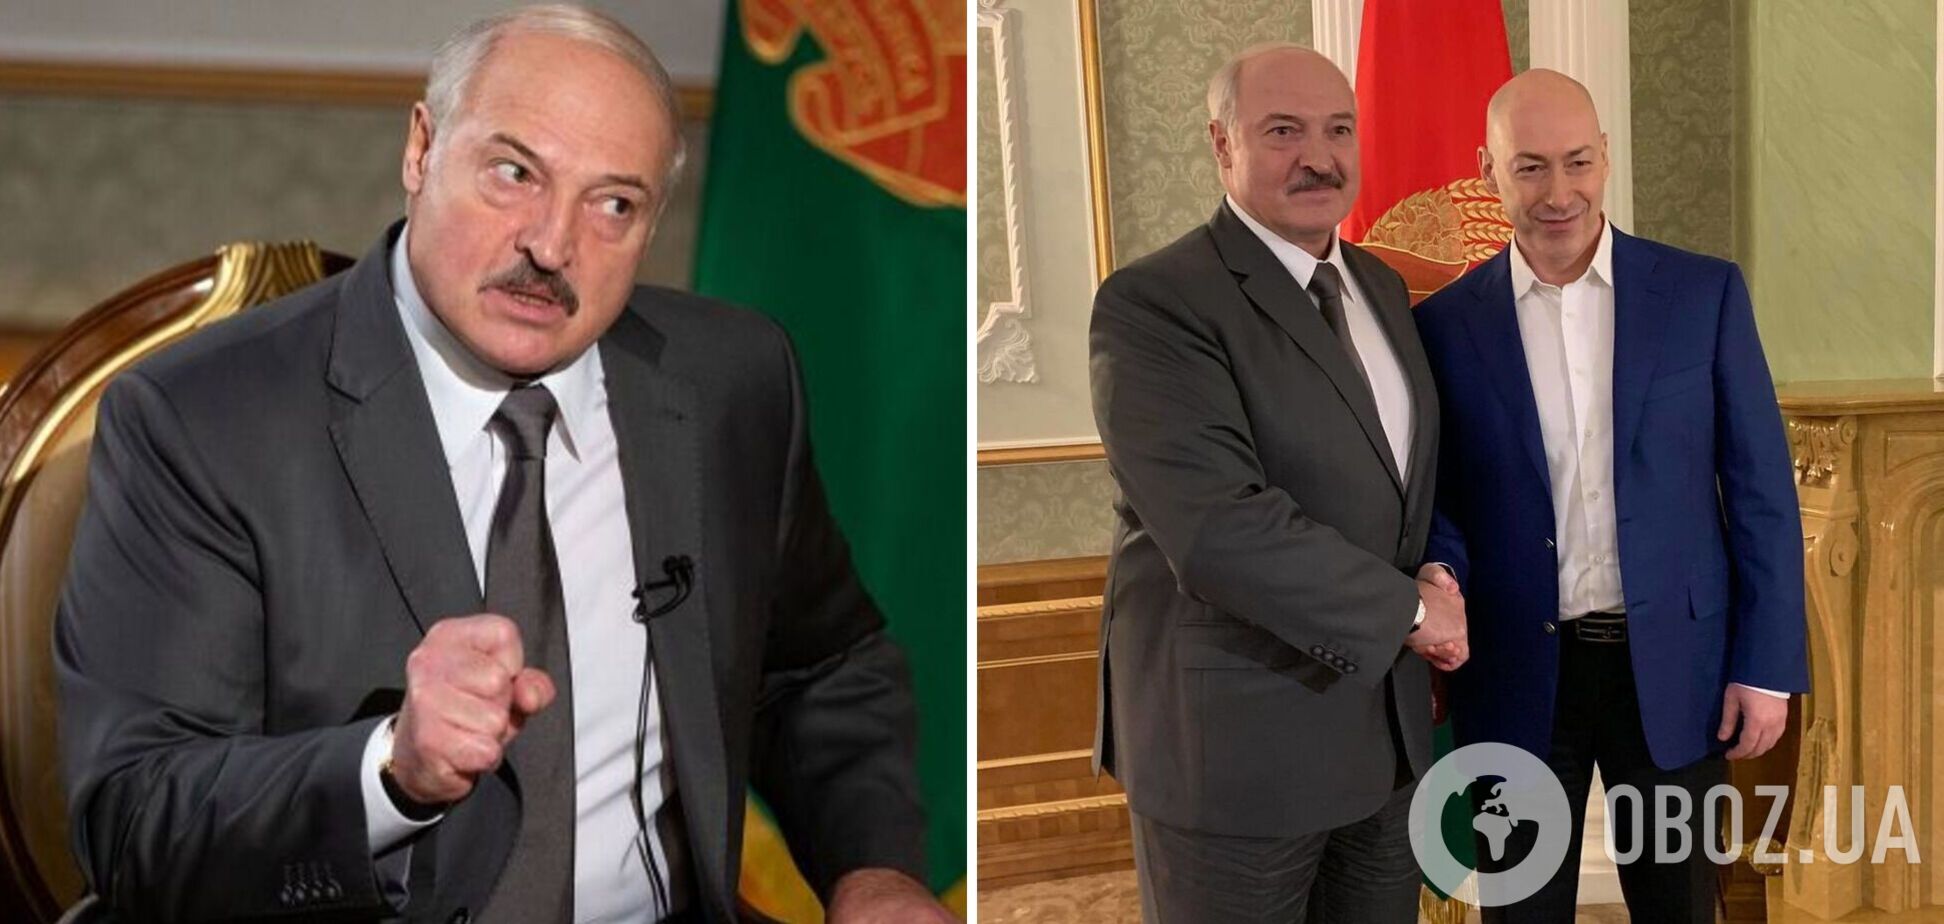 Гордон – про Лукашенка, який його обманув: брехун, покидьок і фашист, такий же як і Путін